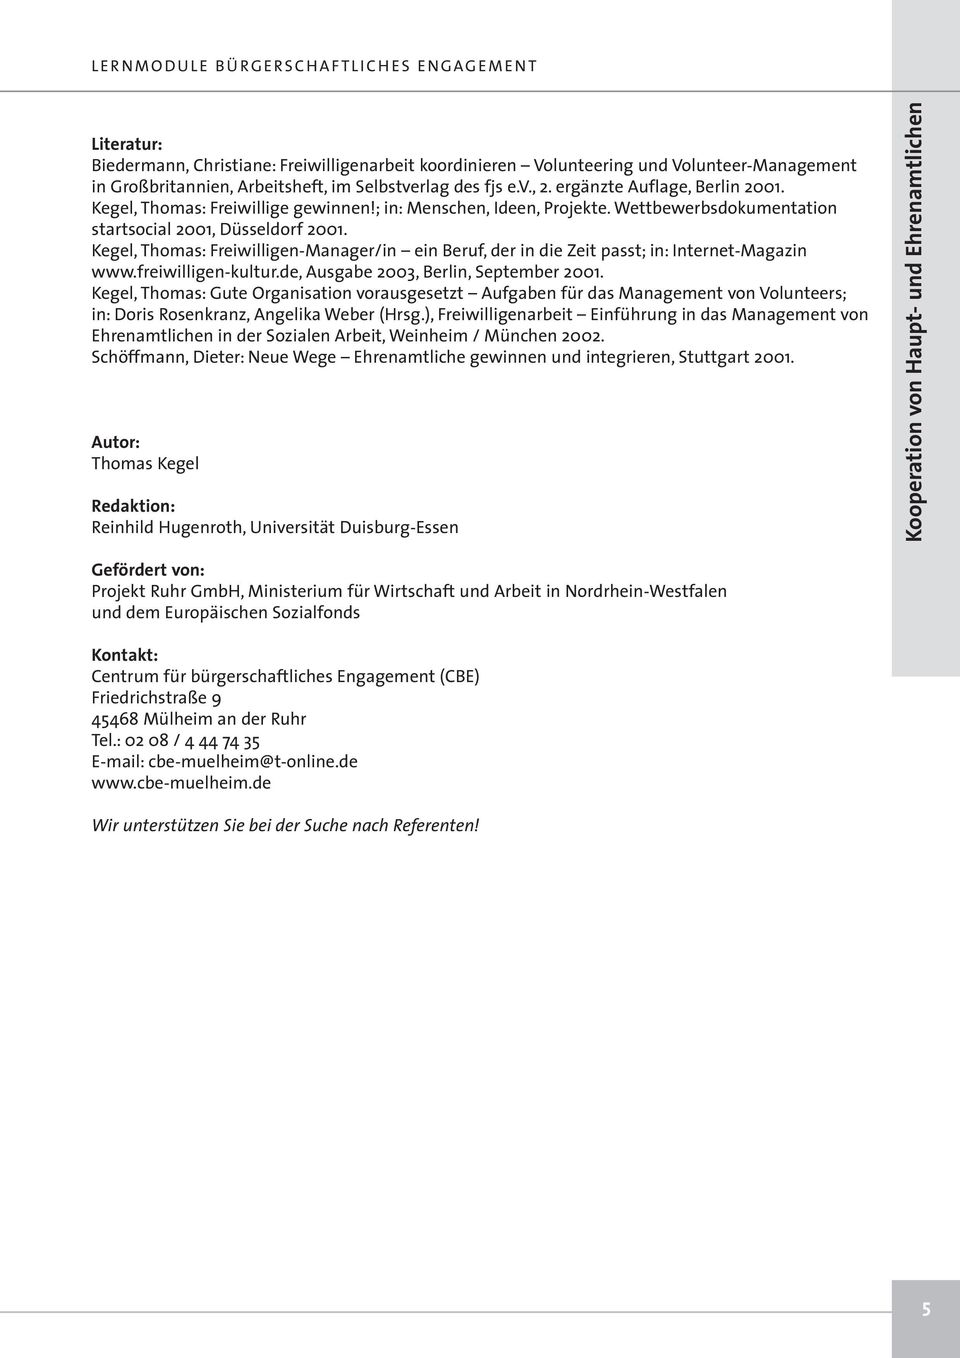 Kegel, Thomas: Freiwilligen-Manager/in ein Beruf, der in die Zeit passt; in: Internet-Magazin www.freiwilligen-kultur.de, Ausgabe 2003, Berlin, September 2001.